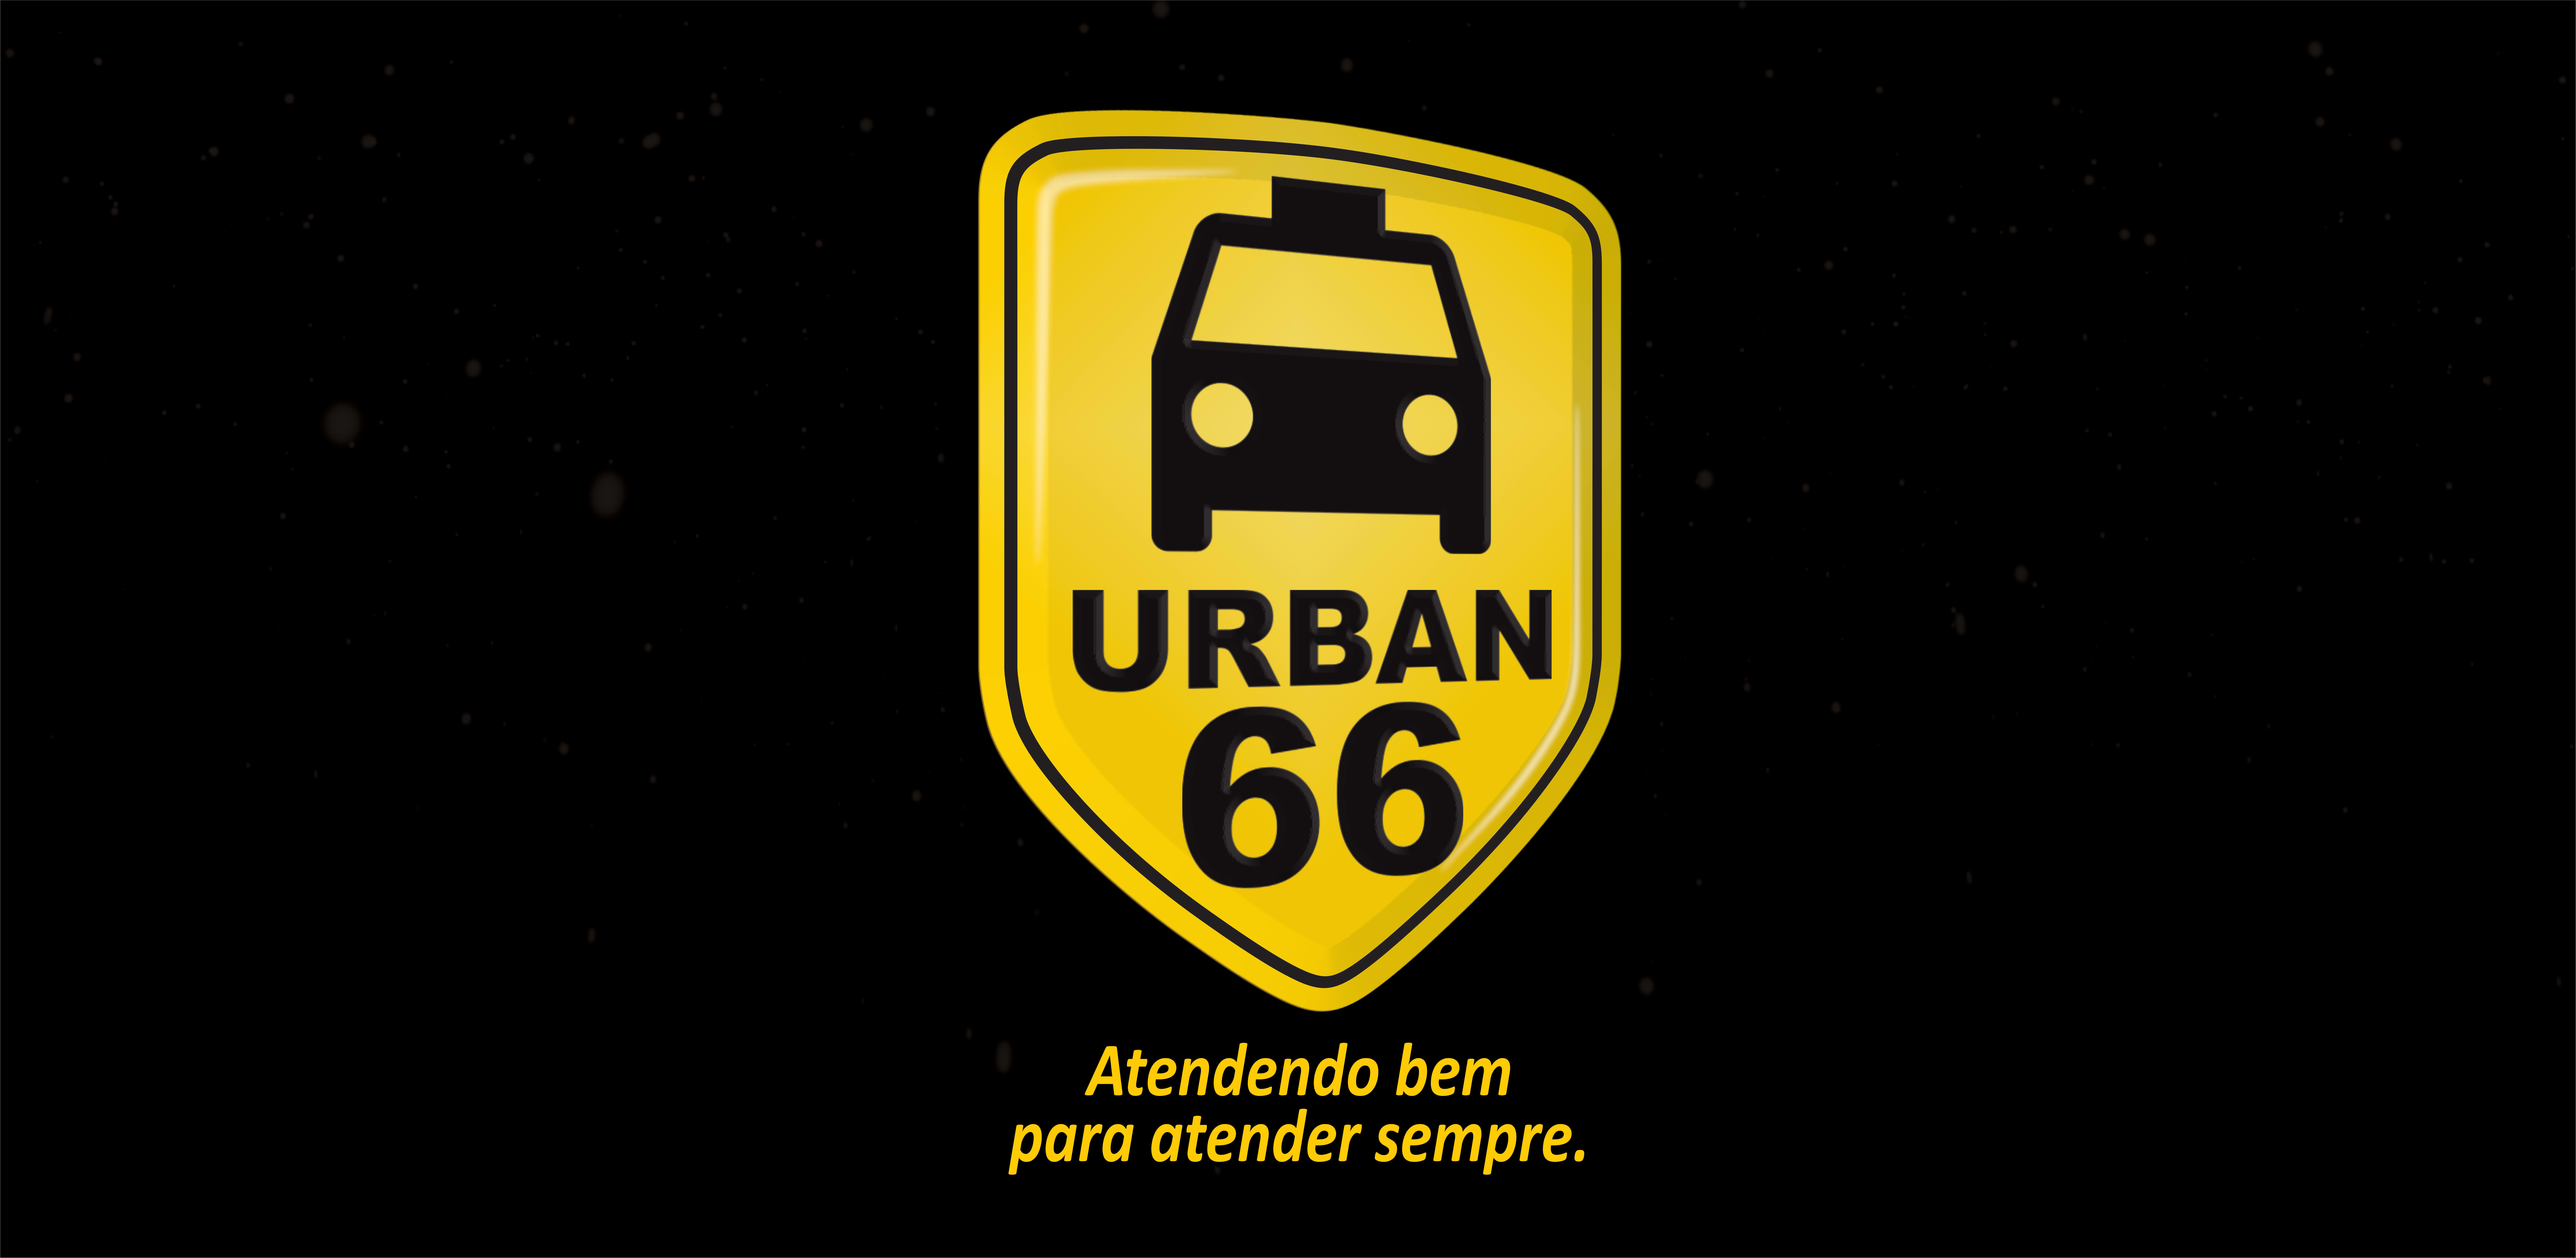 Urban66